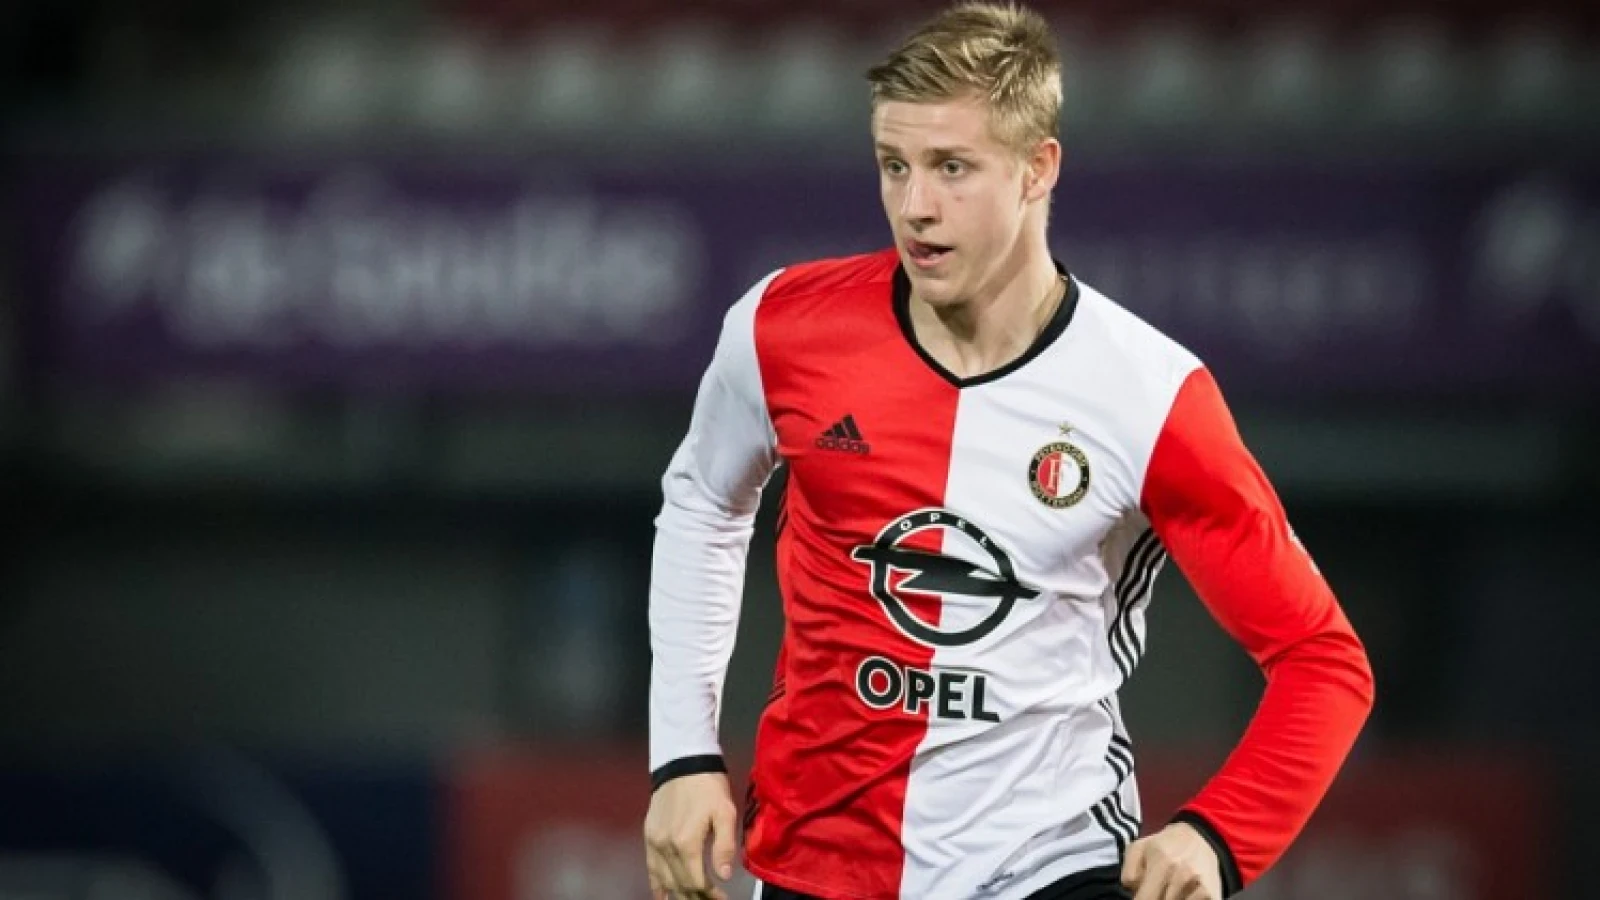 Begrip voor jeugdspeler: 'Feyenoord moet keihard optreden'